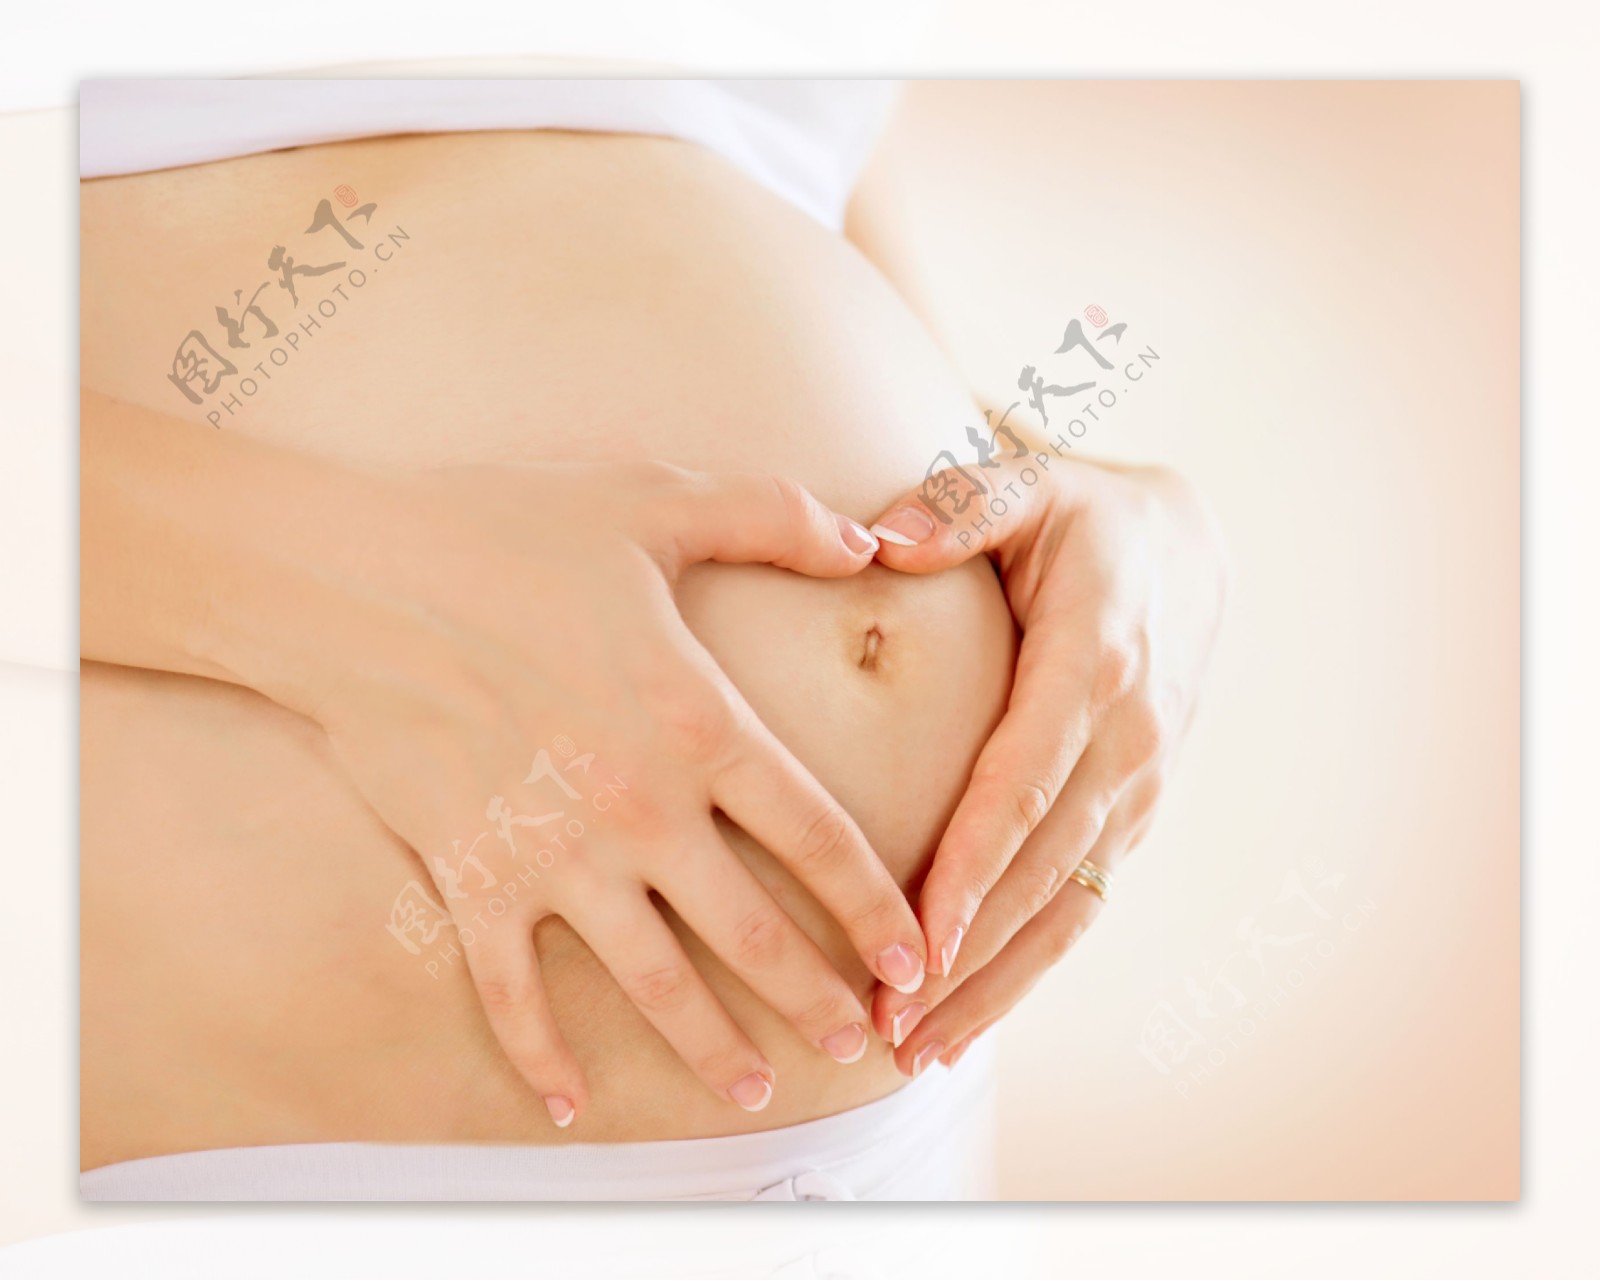 双手放在肚子上的孕妇图片